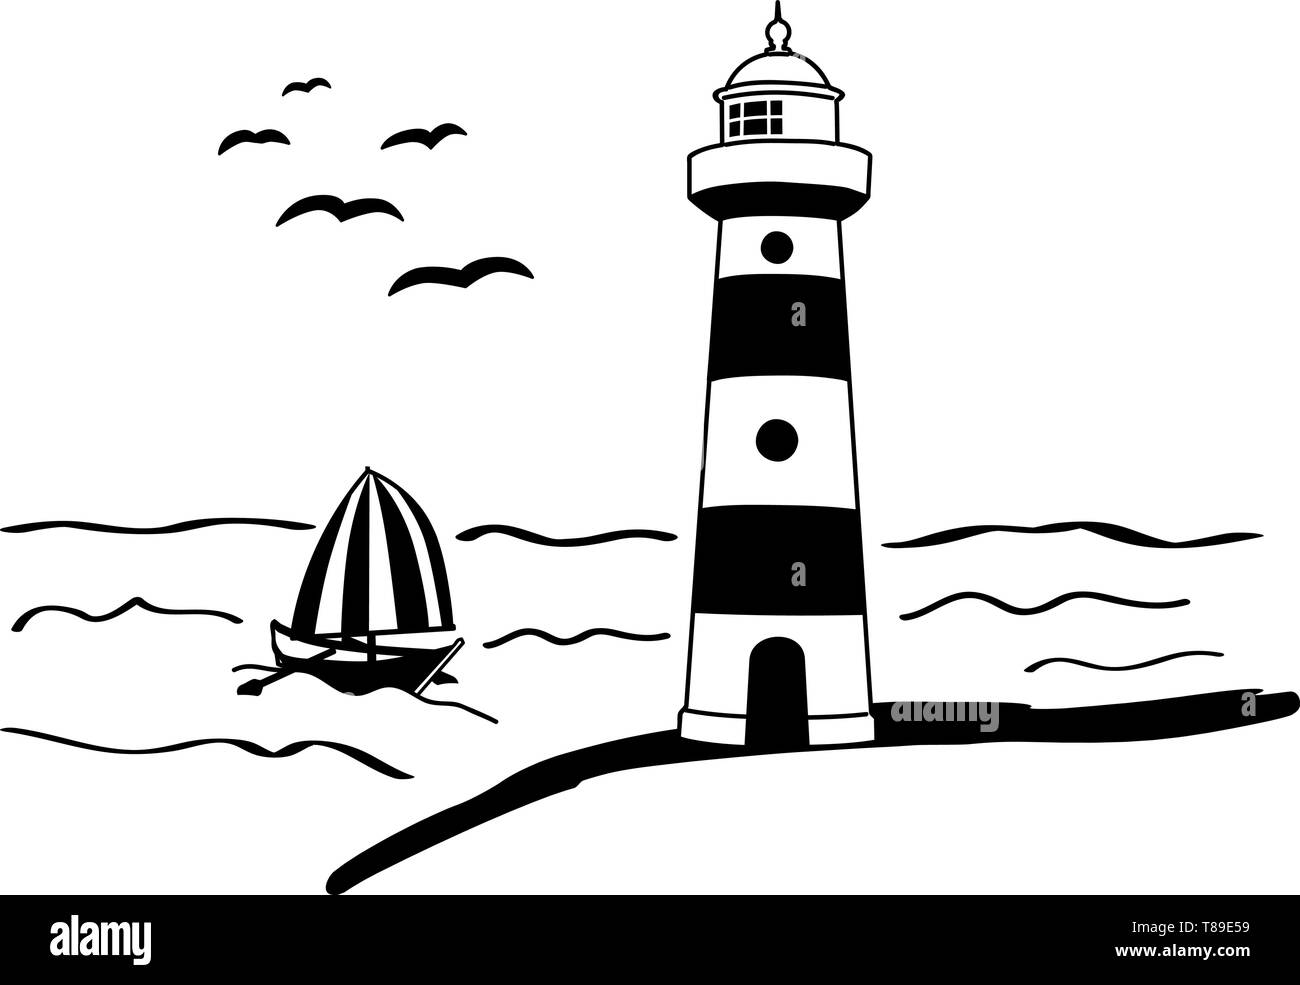 Autocollant Mur lumière briller phare maritime navire voilier bateau mer Illustration de Vecteur